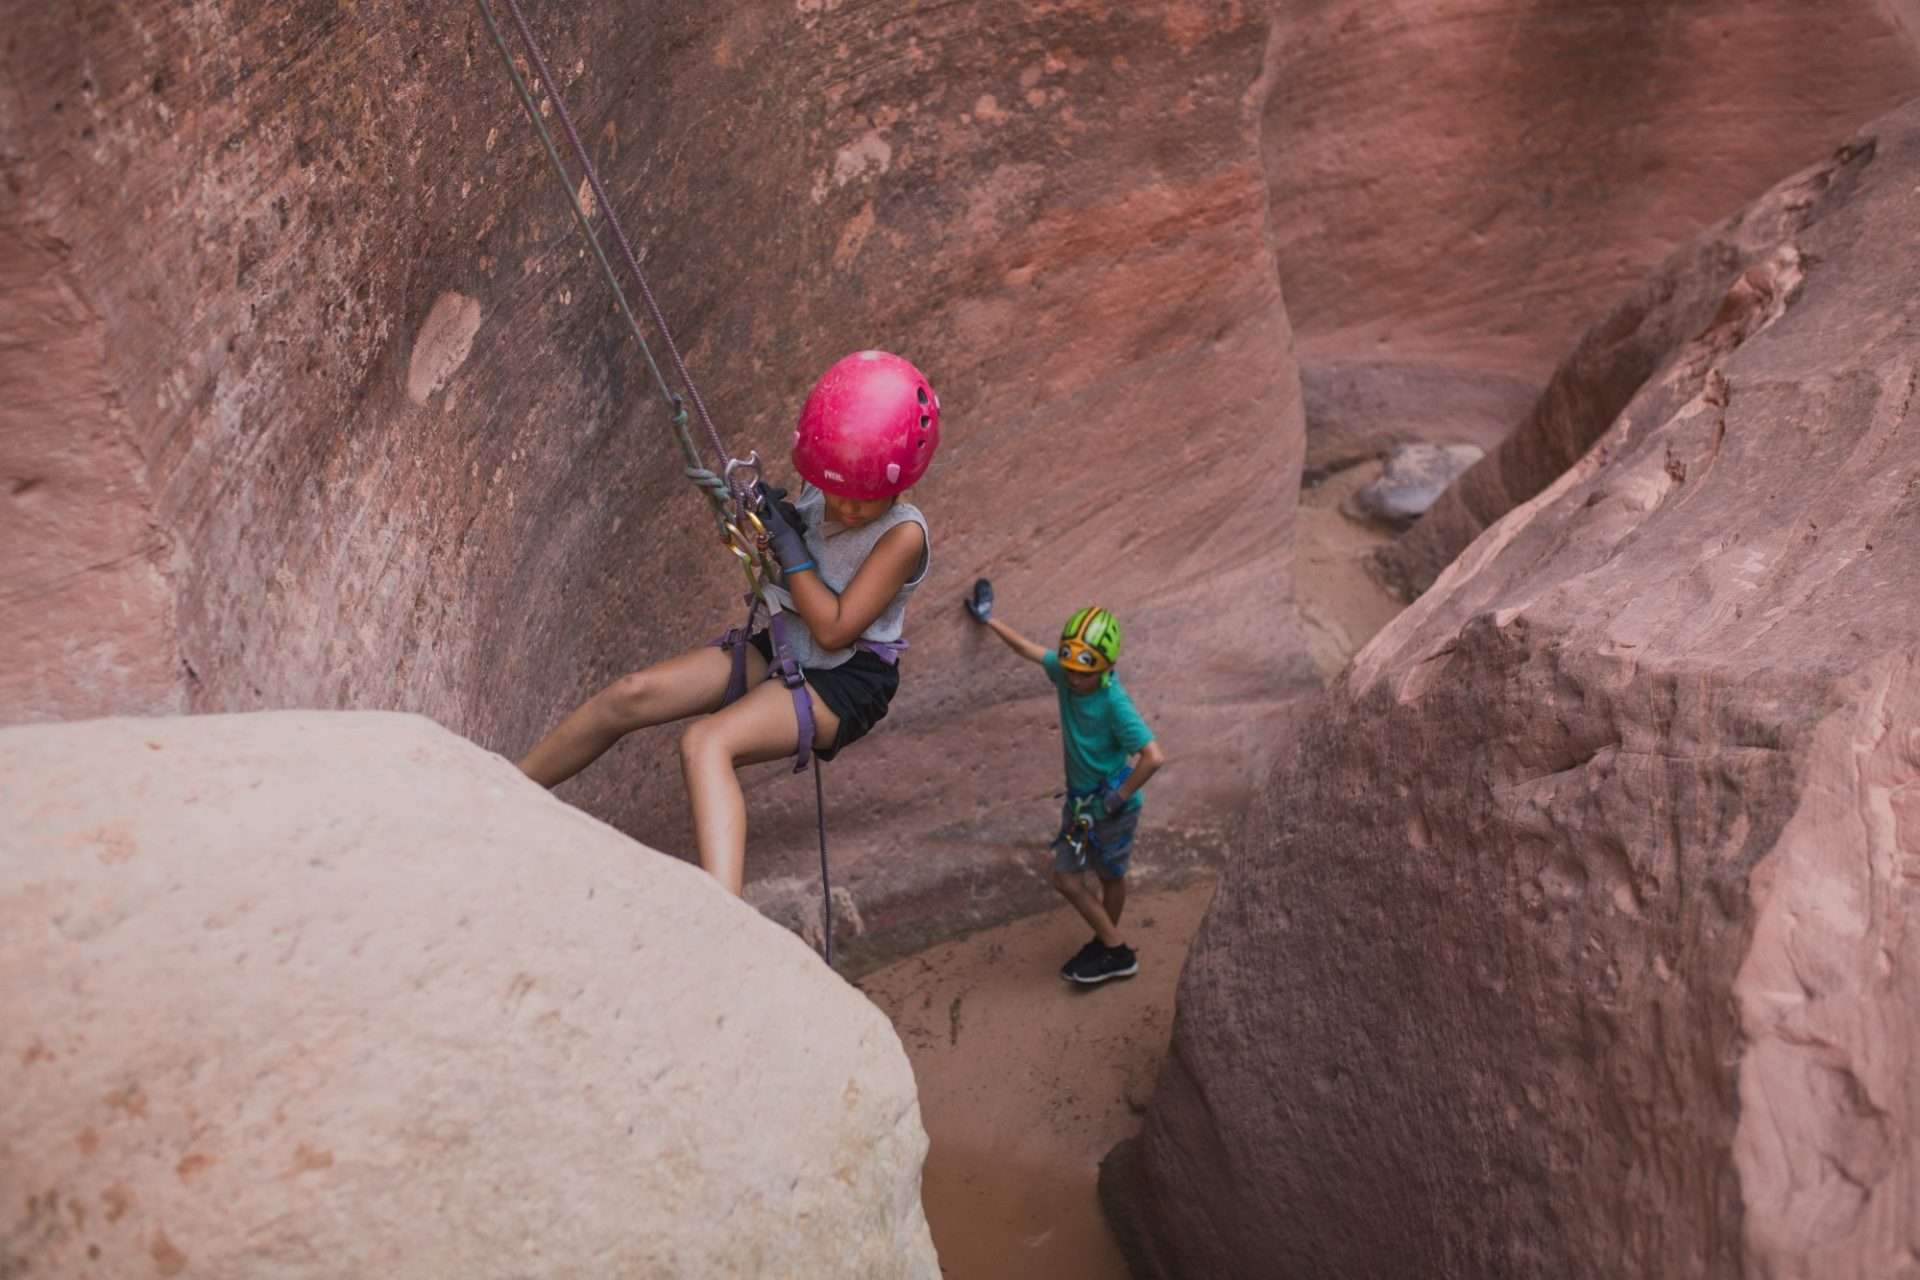 Two people canyoneering